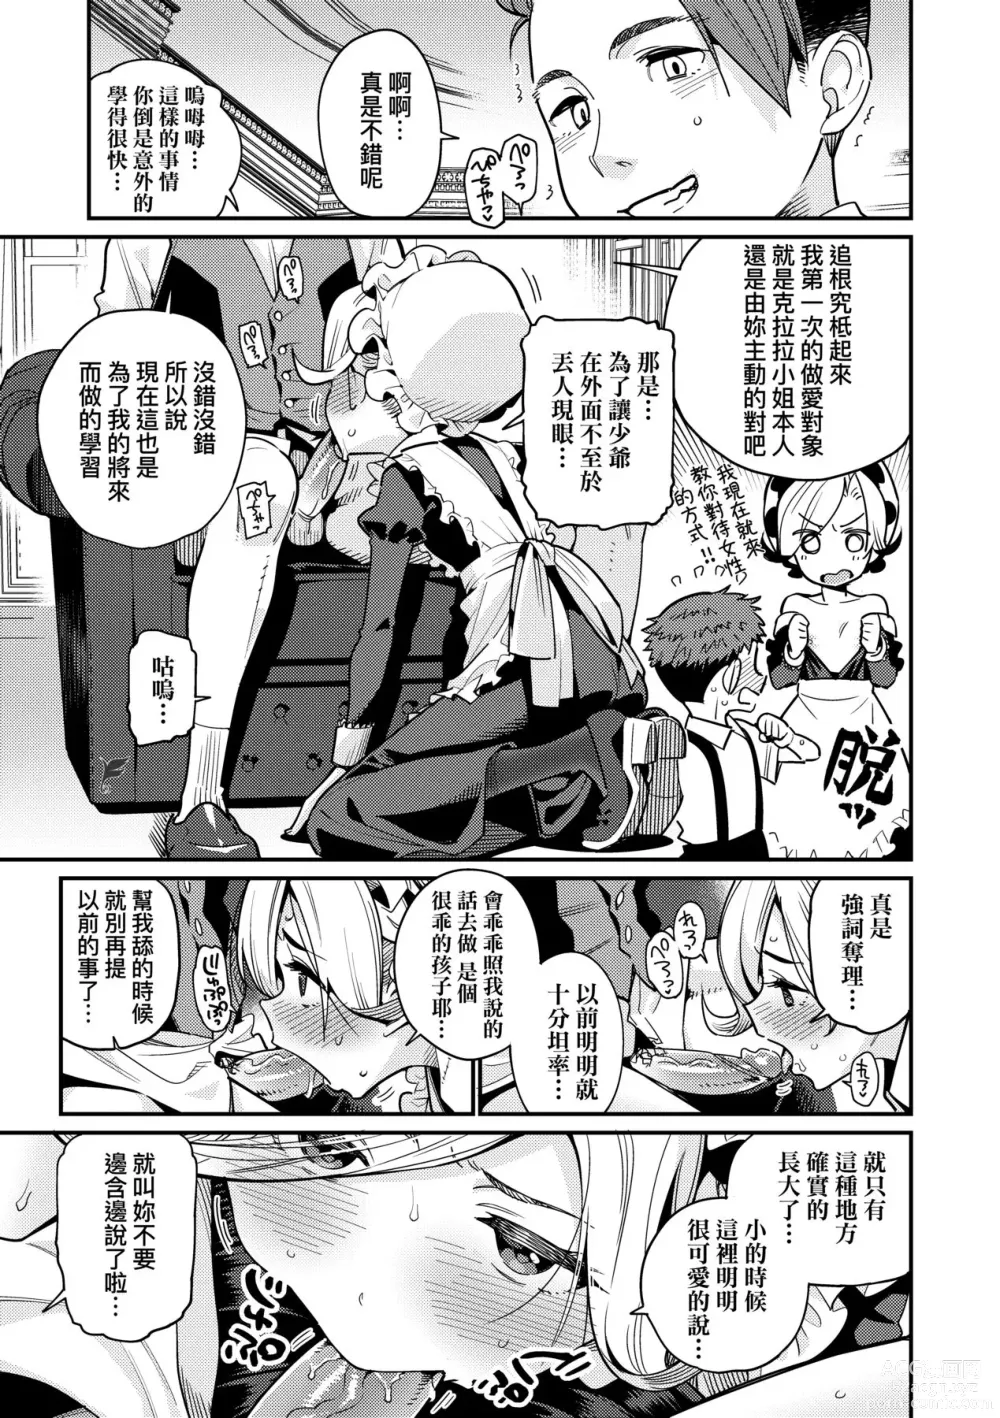 Page 10 of manga Itoshiki Wagaya (decensored)